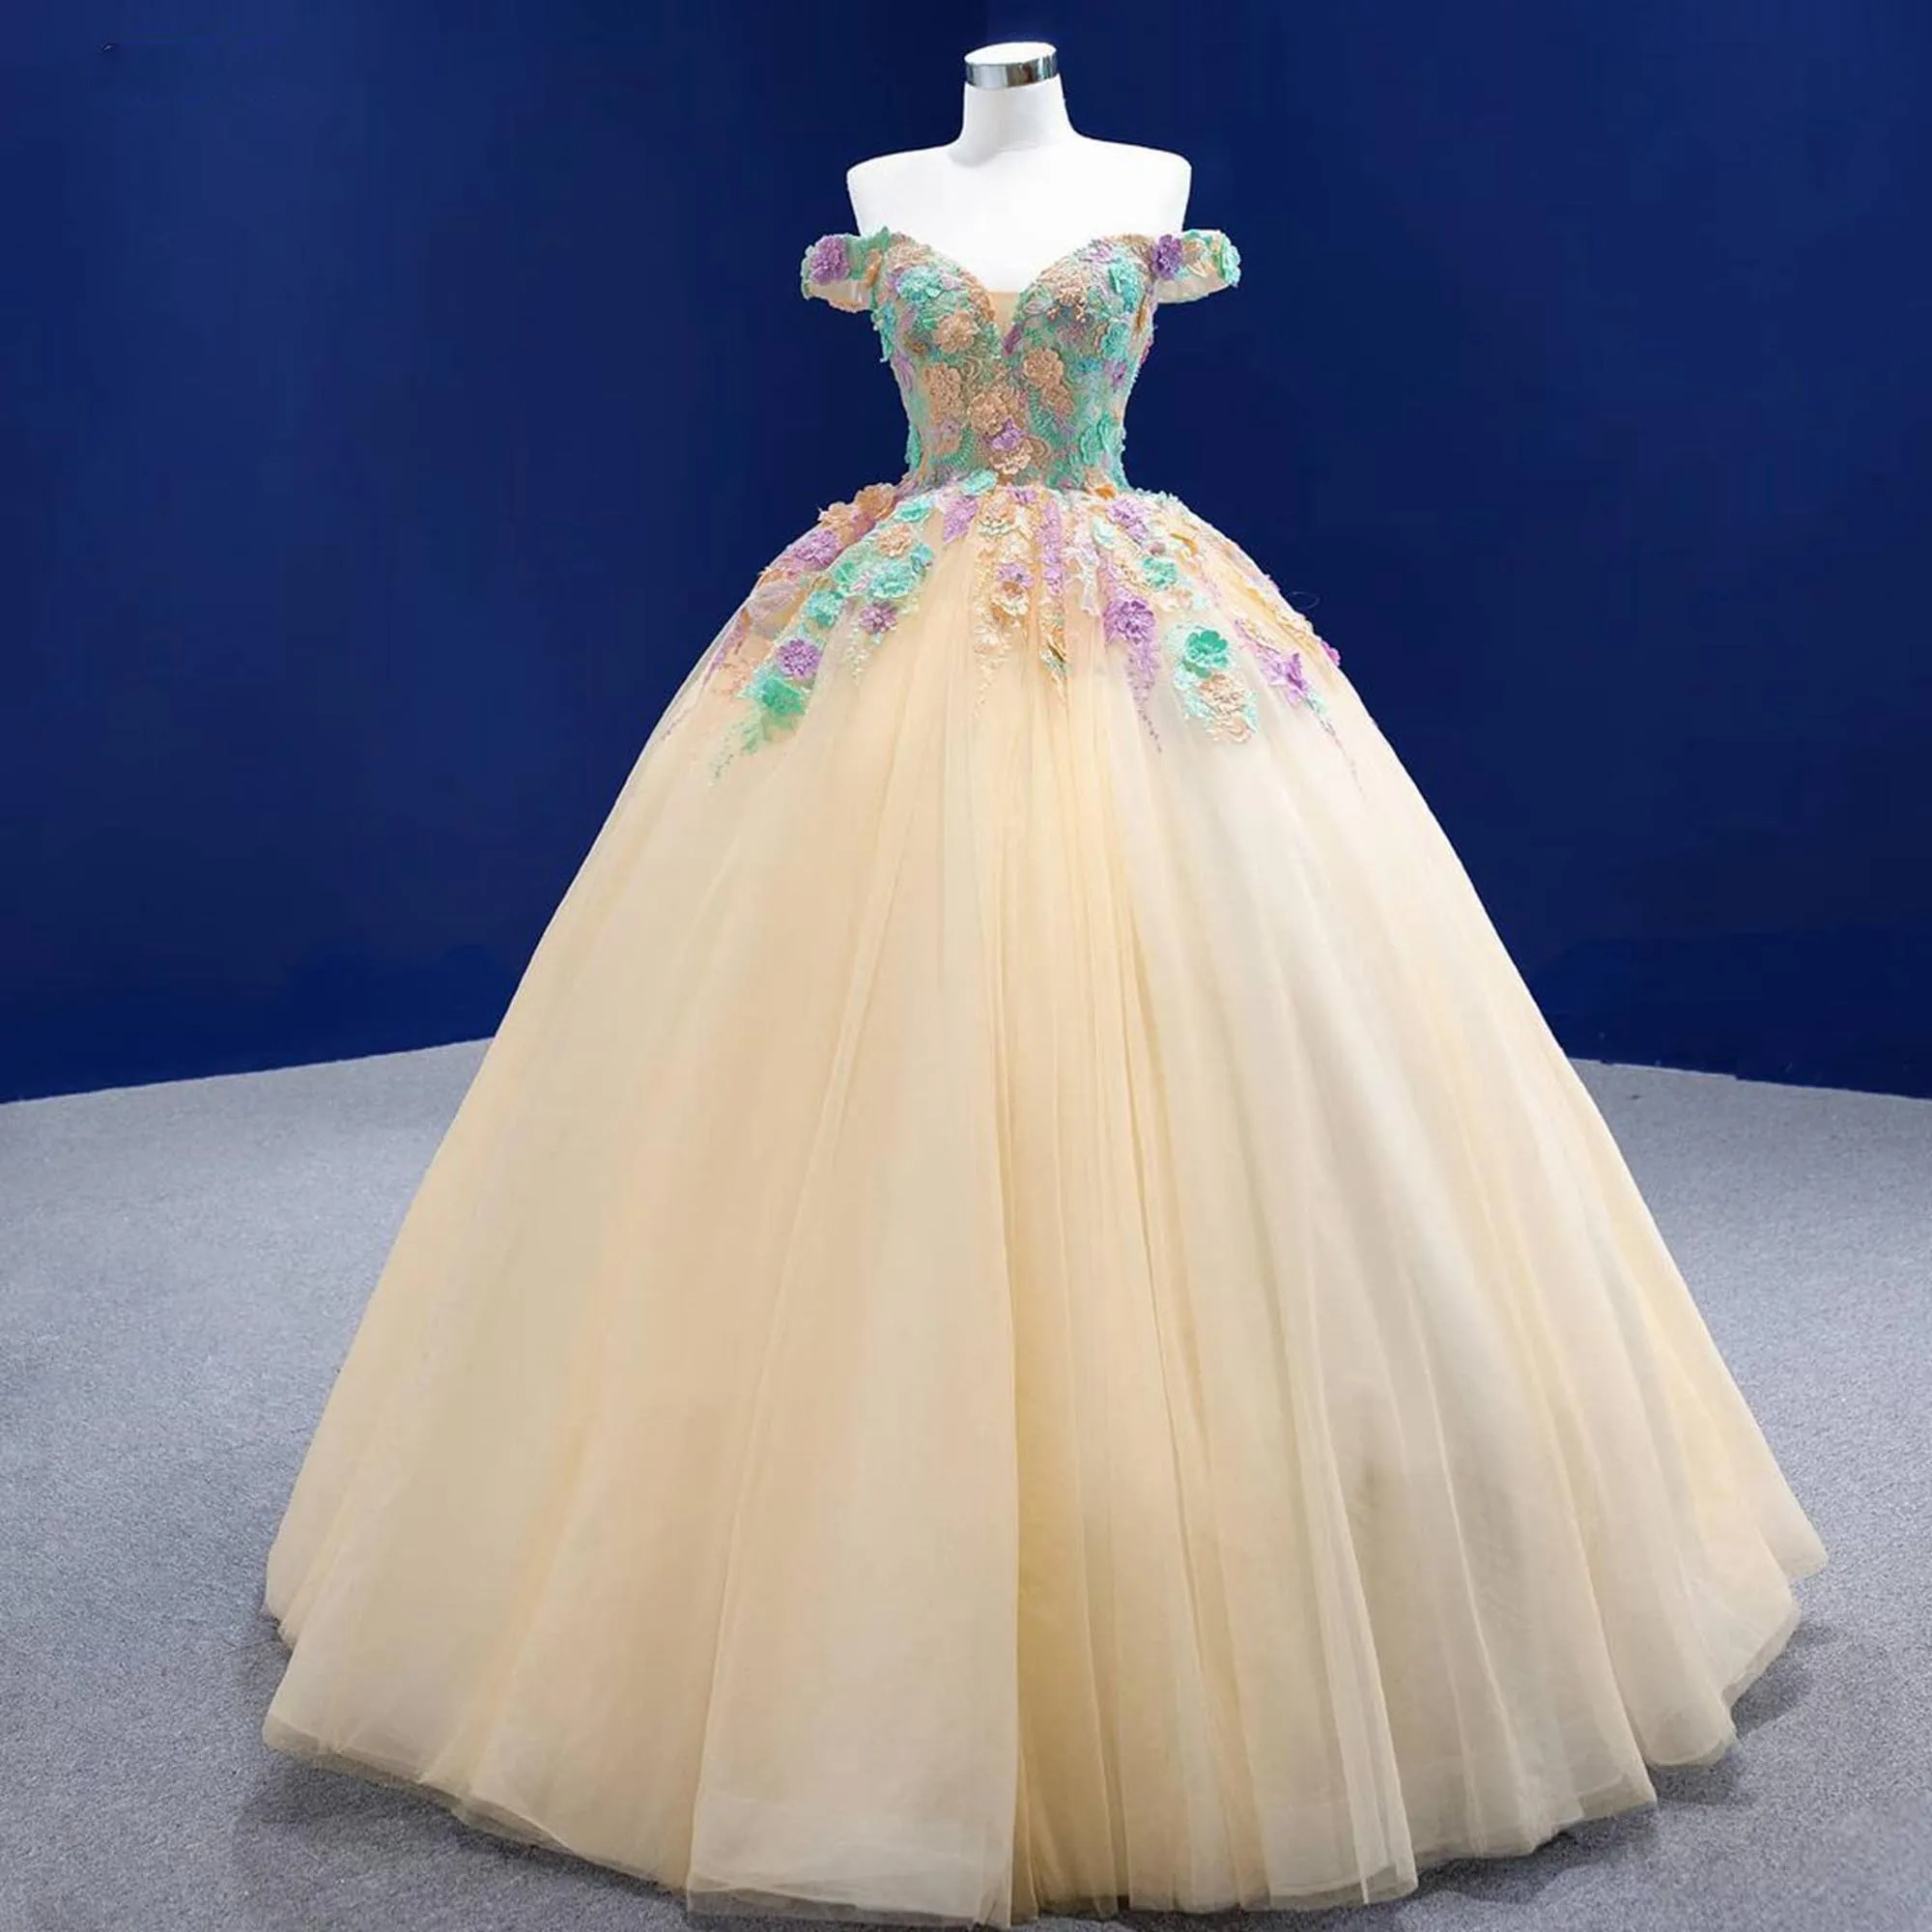 

Цветочное платье с открытыми плечами цветное платье Ever Pretty многослойное Пышное Бальное платье из тюля вечернее платье в пол